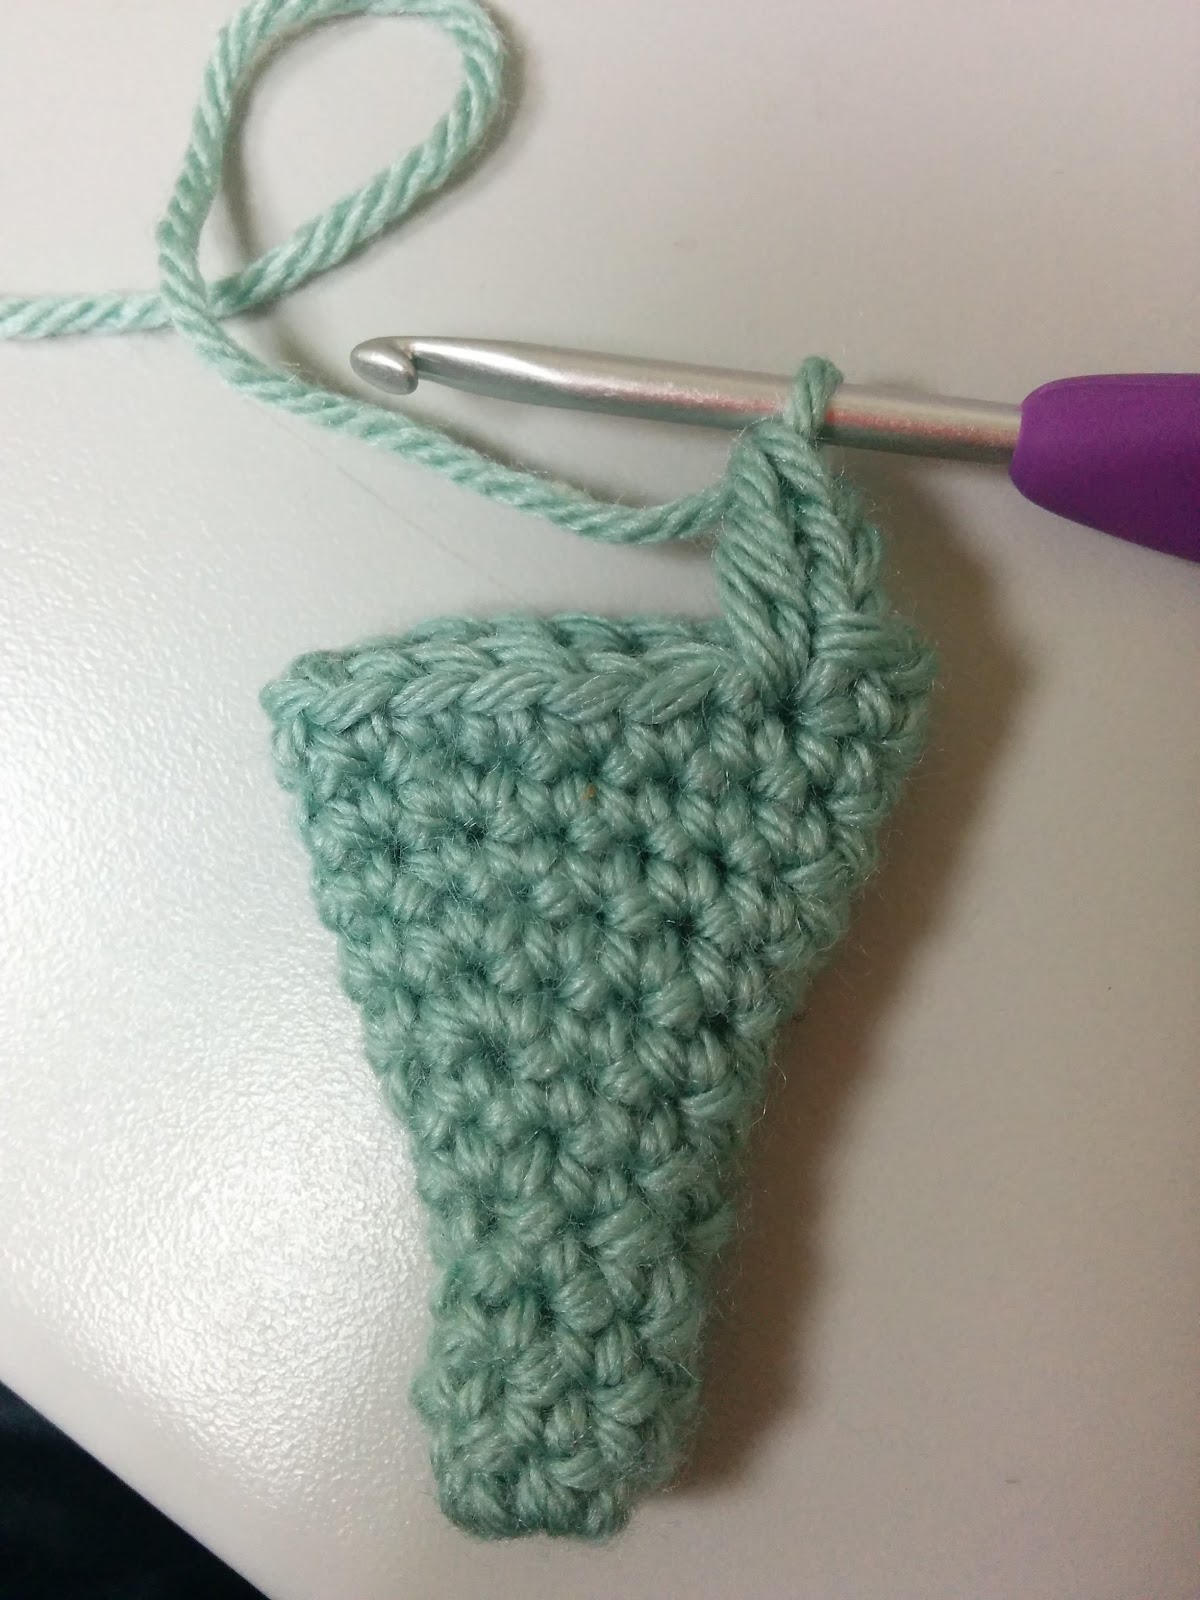 かぎ針で編む簡単な赤ちゃん用どんぐり帽子の編み方 Crochet And Me かぎ針編みの編み図と編み方